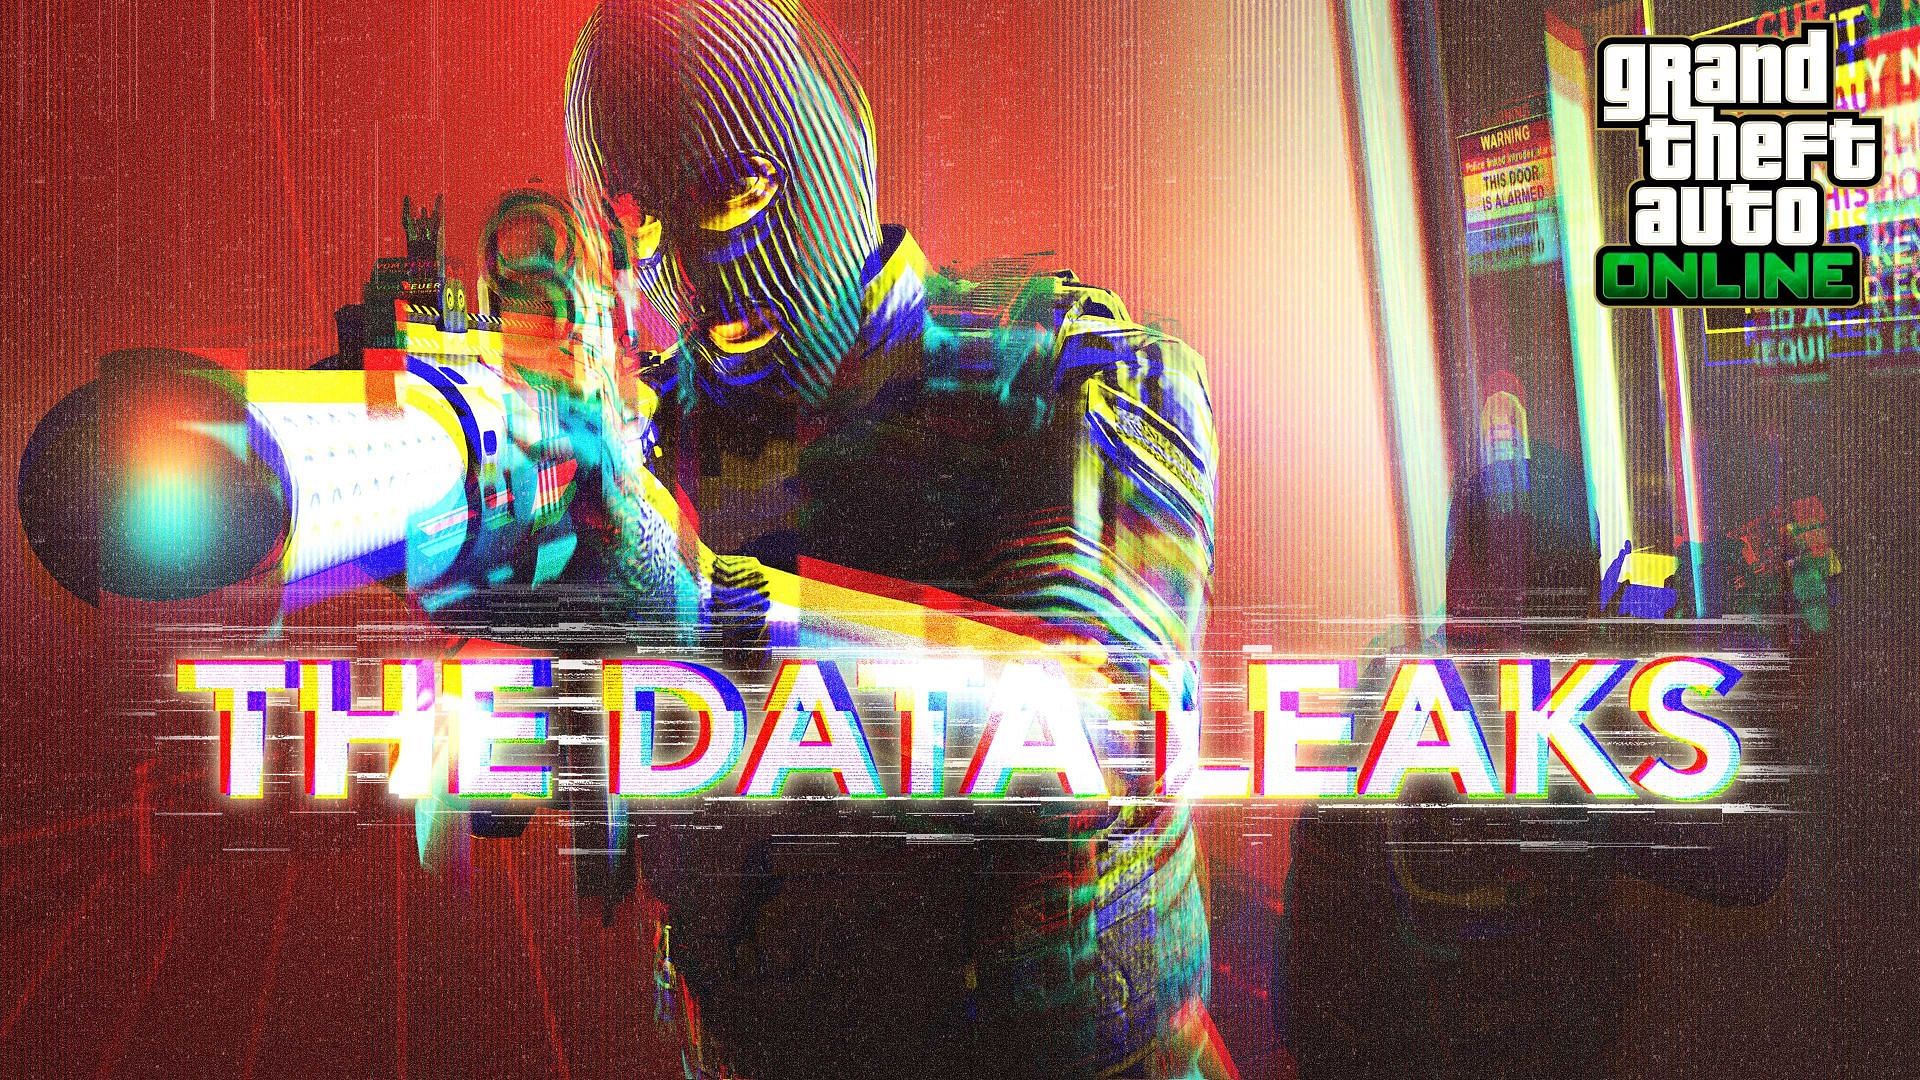 Promo art for The Data Leaks (Image via Rockstar Games)